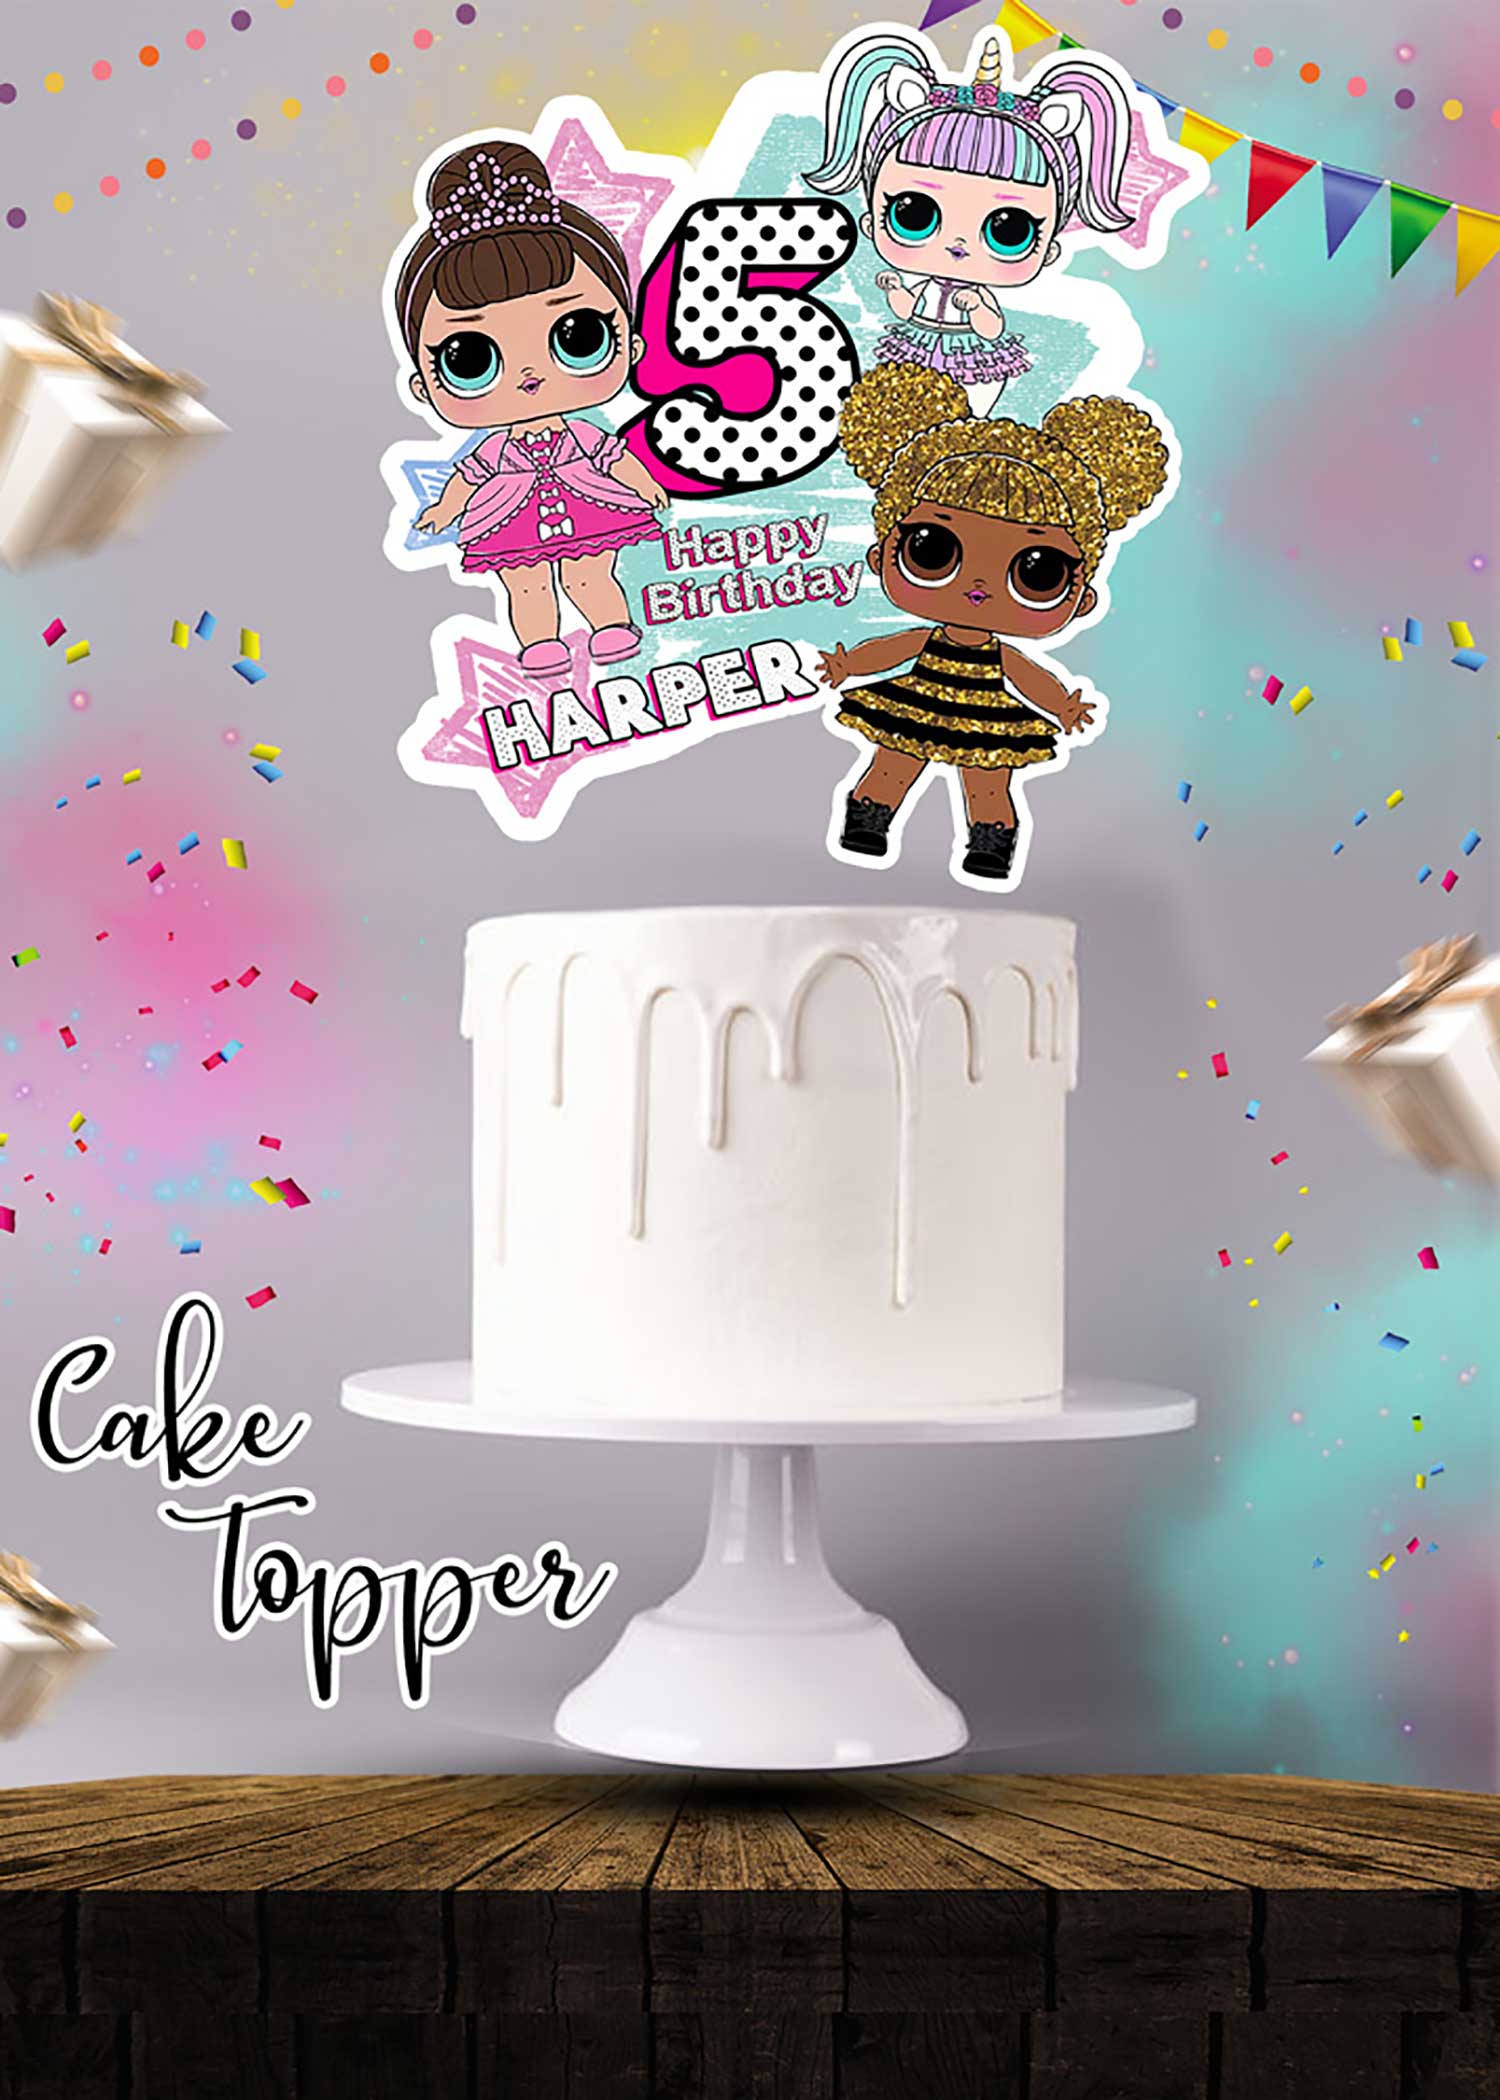 Buy Happy Birthday Cake Topper, Custom Cake Topper, Acrylic Cake Topper,  80th Birthday Cake Topper, Wooden Cake Topper, Happy 1st Birthday Cake  Online in India - Etsy